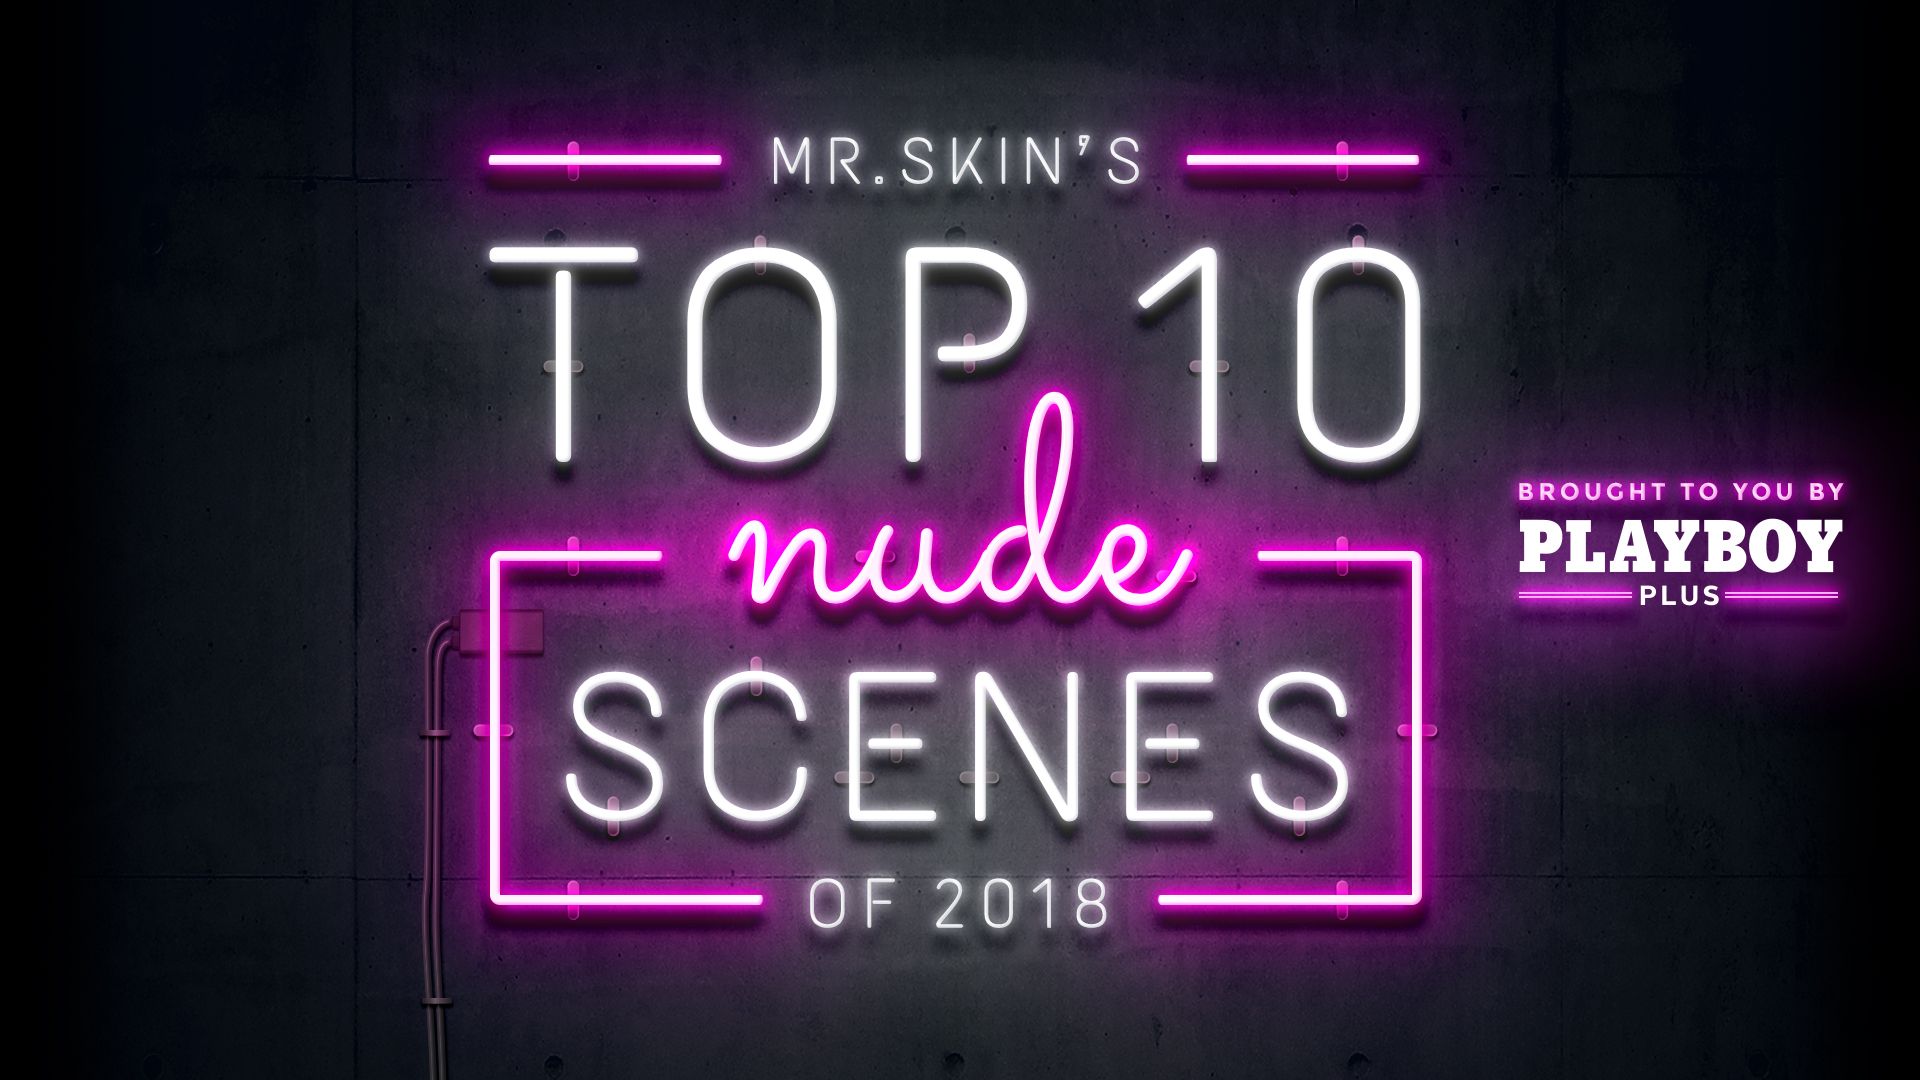 Mr. Skin's Top 10 Nude Scenes of 2018